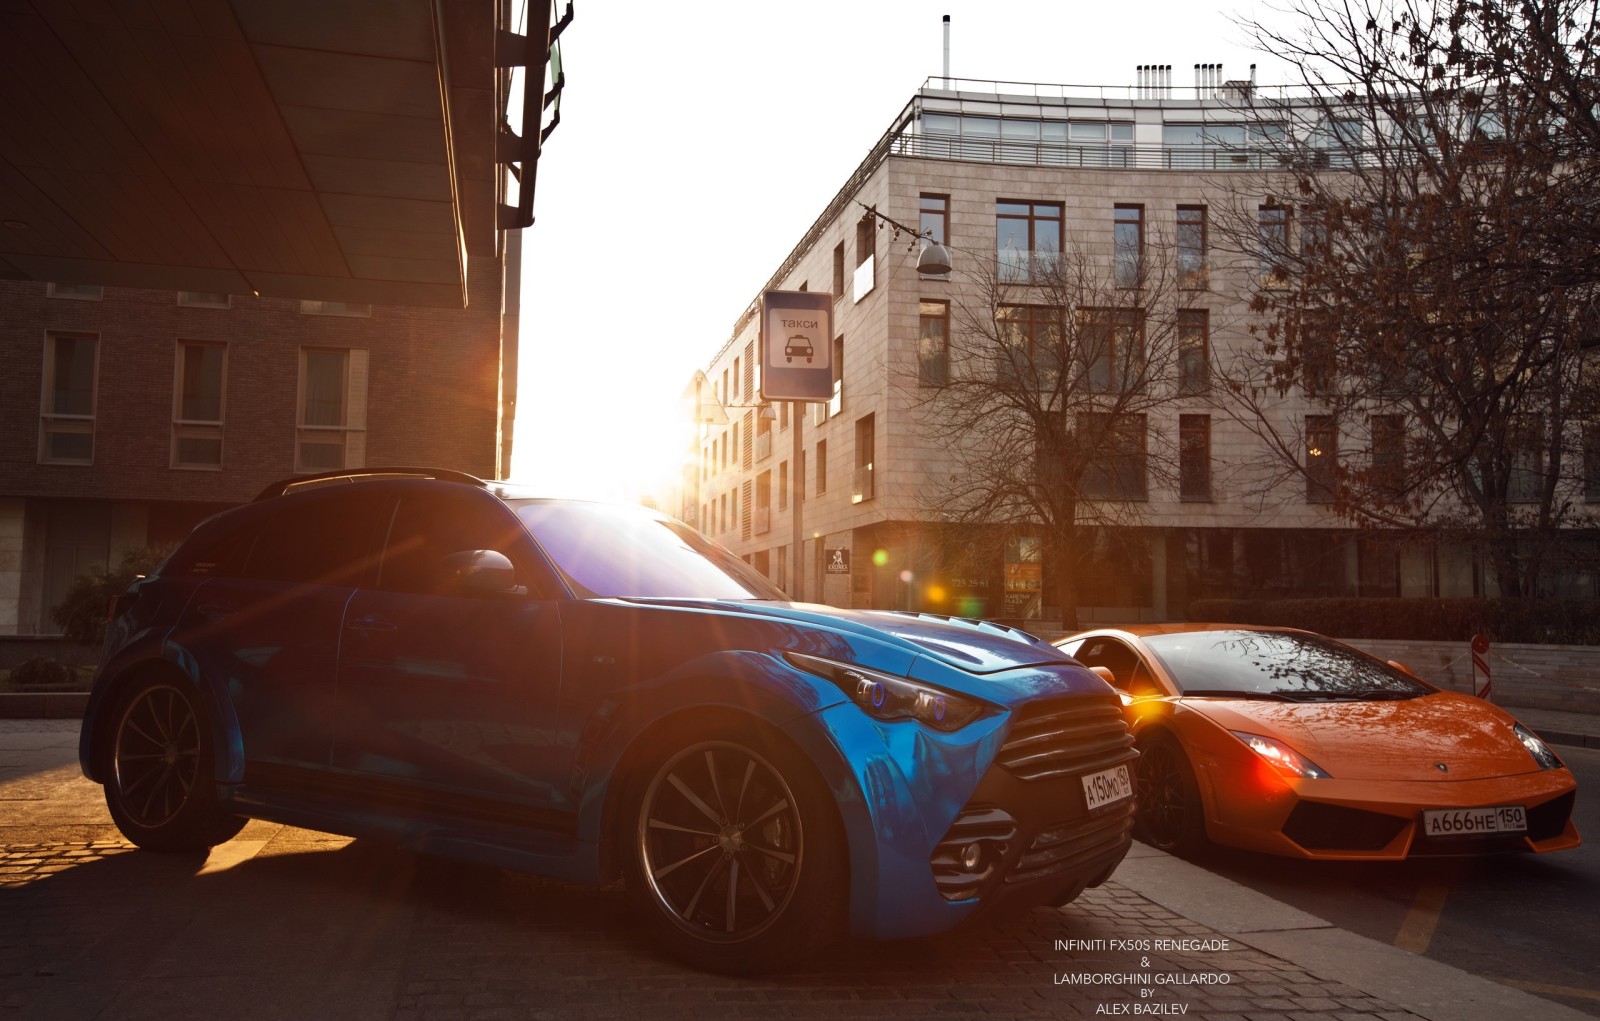 Lamborghini, Tự động, mặt trời, Máy móc, nhiếp ảnh gia, Alex Bazilev, Infiniti